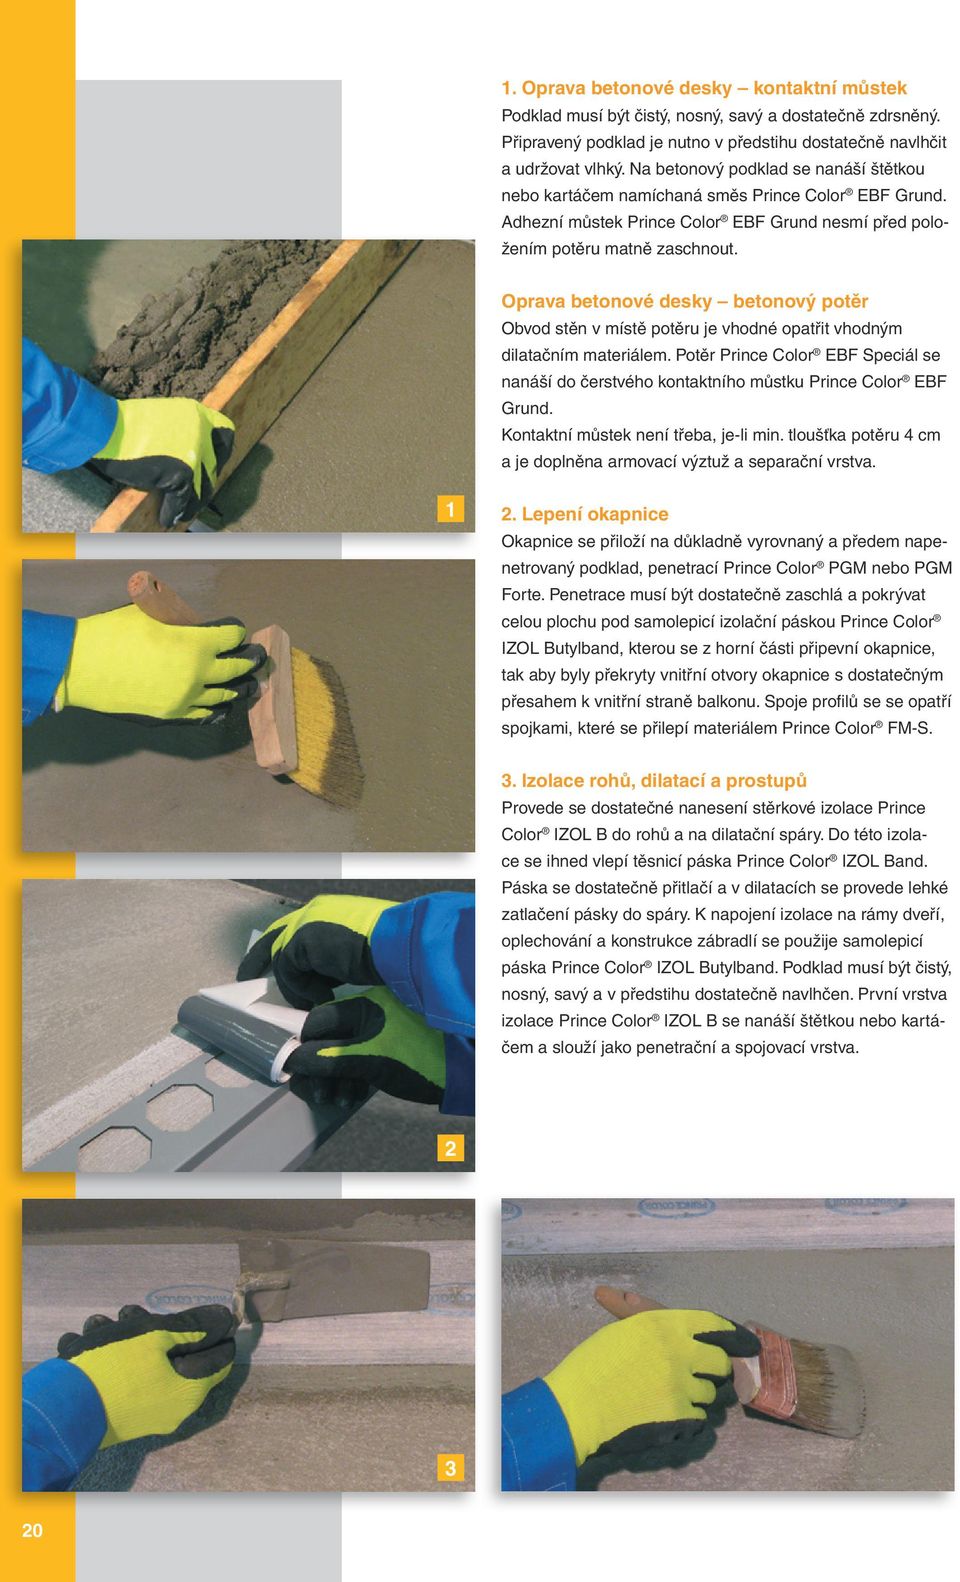 Oprava betonové desky betonový potěr Obvod stěn v místě potěru je vhodné opatřit vhodným dilatačním materiálem.